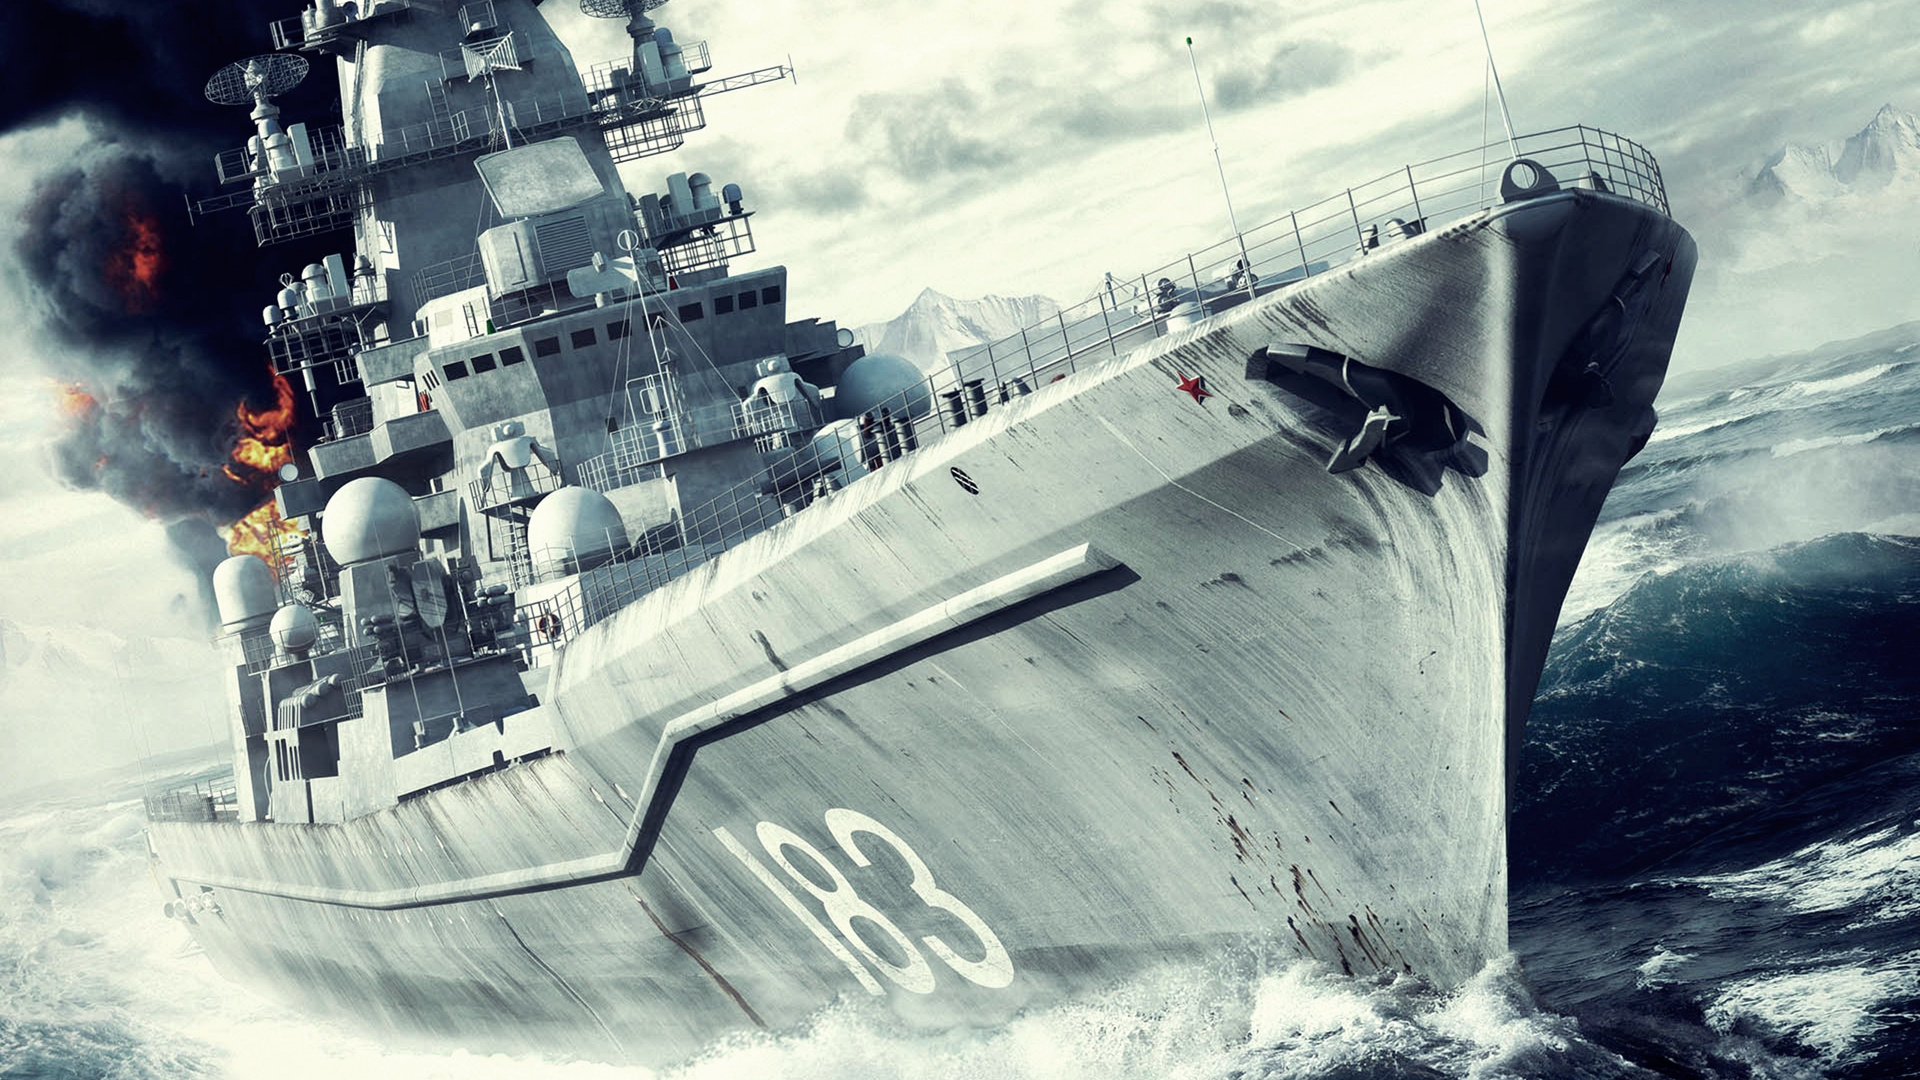 Acorazado, Naval, Buque de Guerra de La, Crucero de Batalla, Destructora. Wallpaper in 1920x1080 Resolution